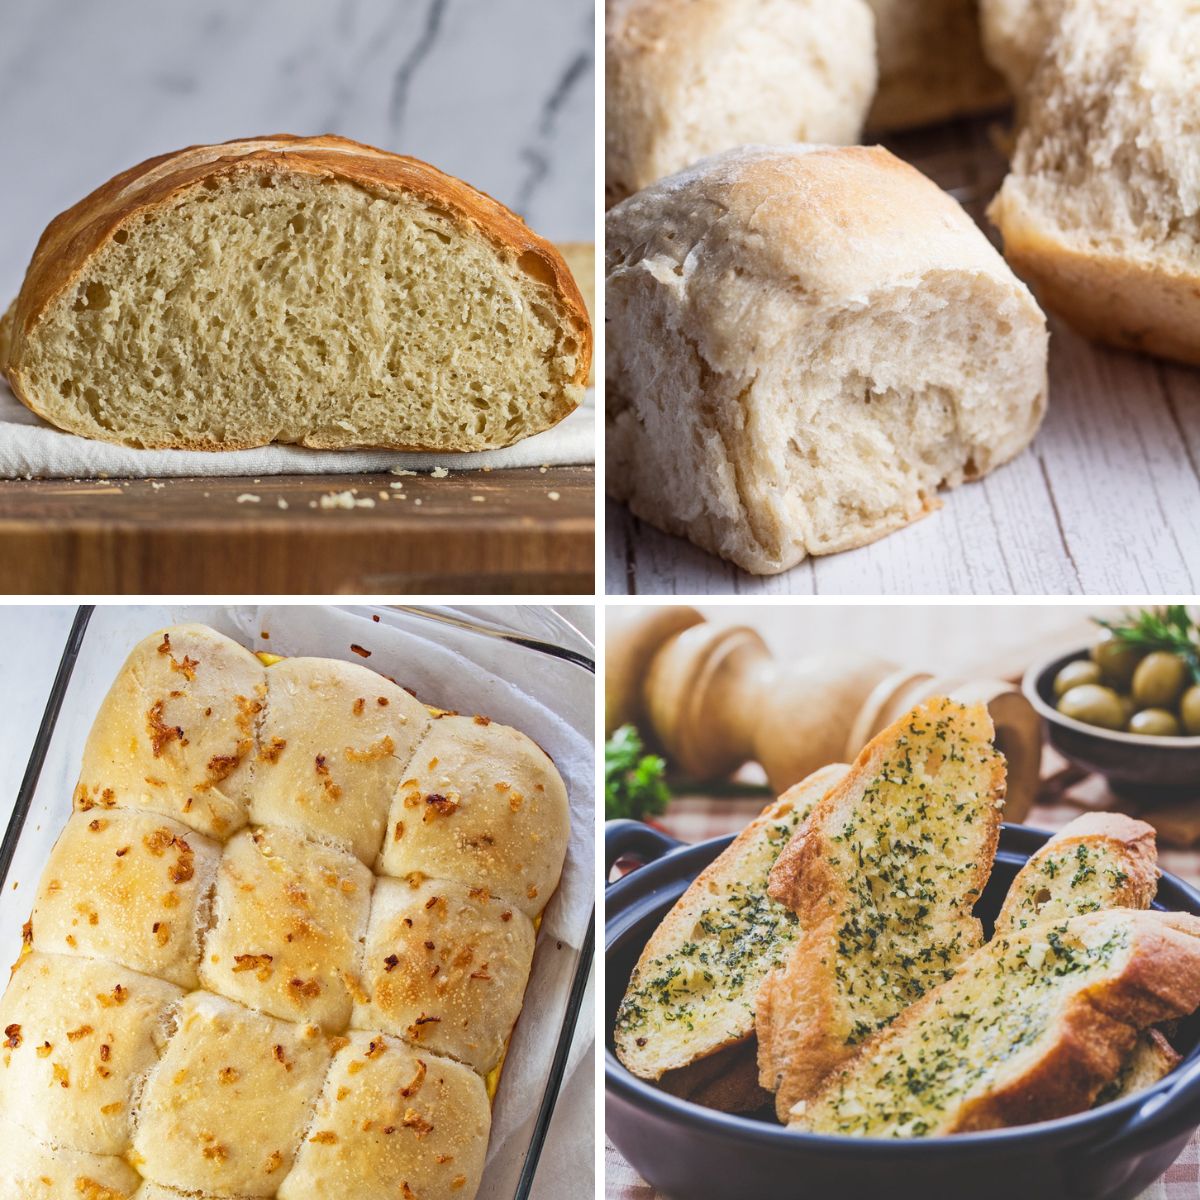 Najbolji recepti za pecivo i kruh za Dan zahvalnosti koje možete ispeći i podijeliti uz blagdanske obroke.